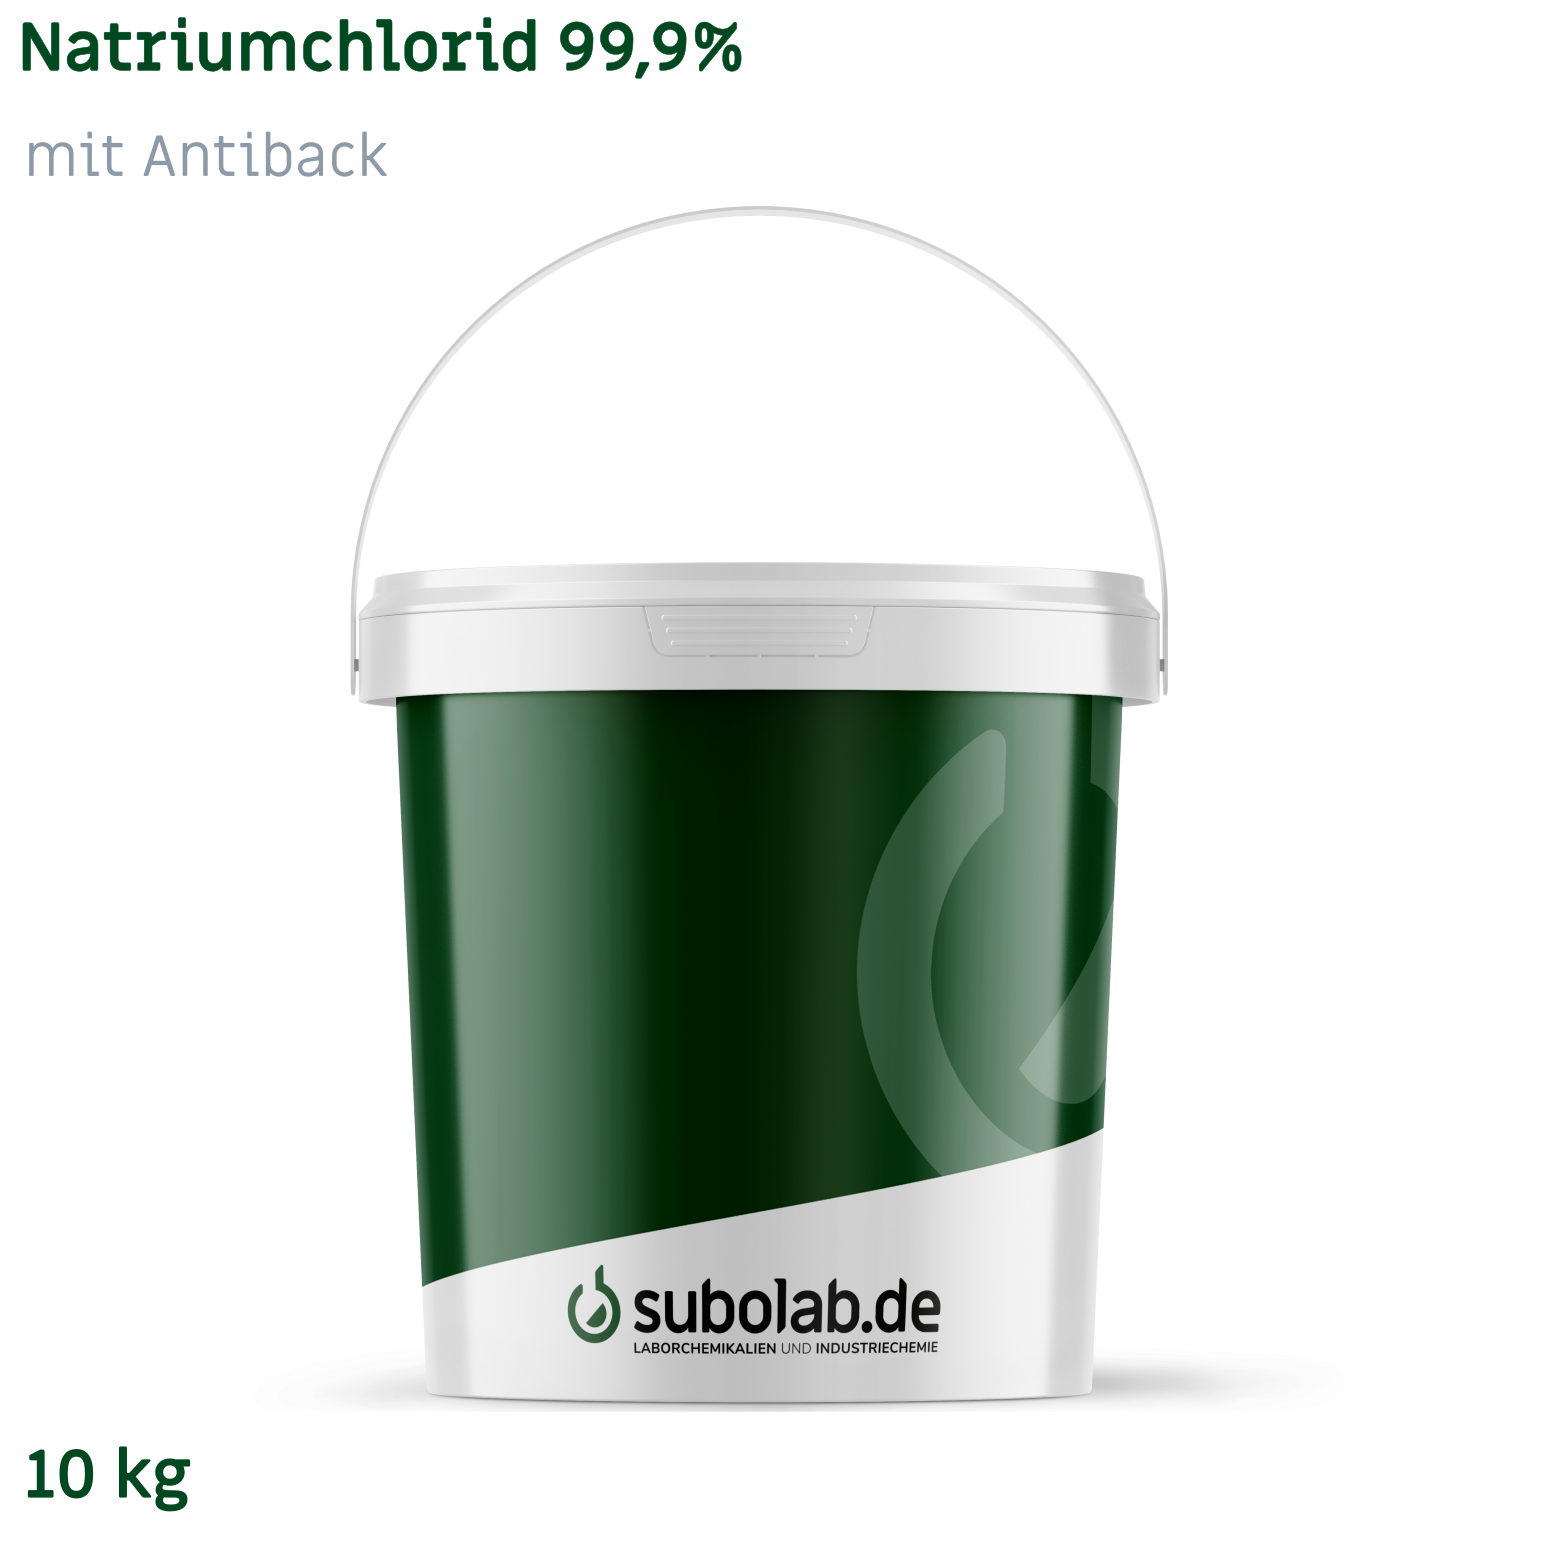 Bild von Natriumchlorid 99,9% mit Antiback (10 kg)